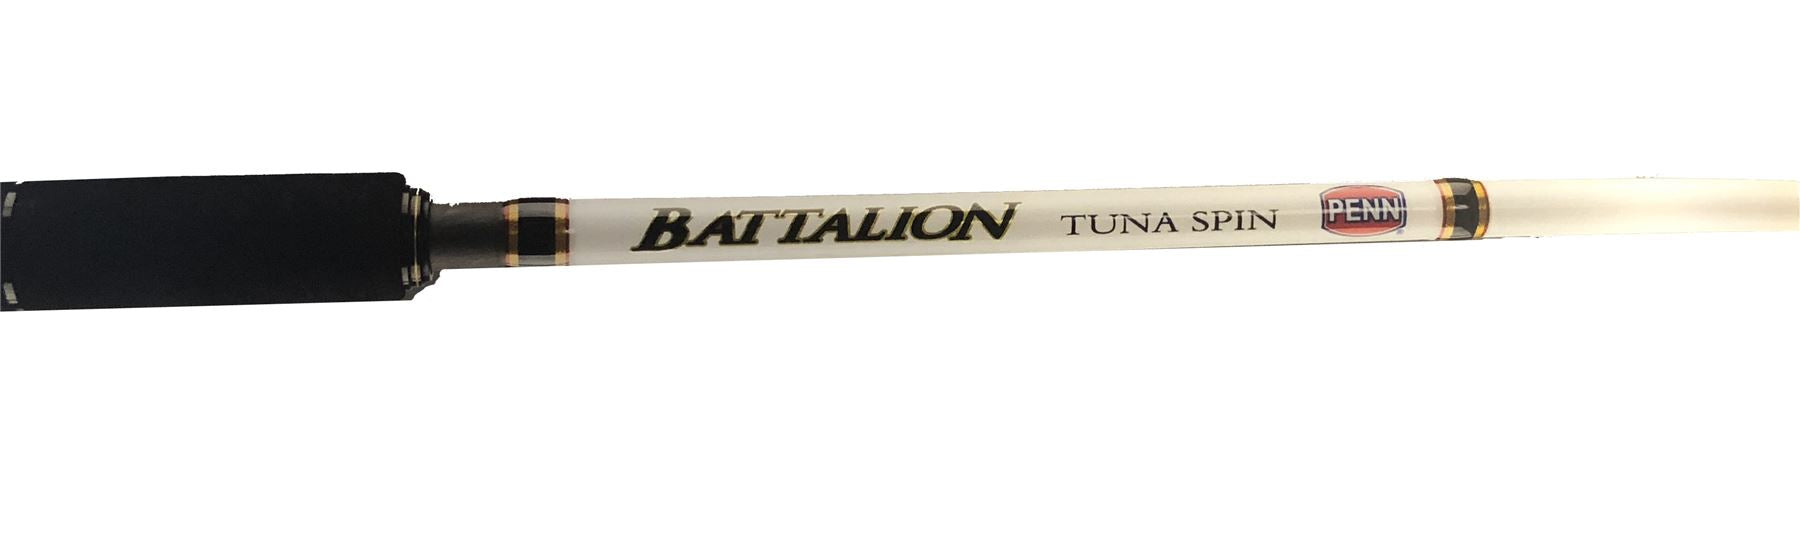 Penn Battalion Tuna Spin 8'2" 100-180g